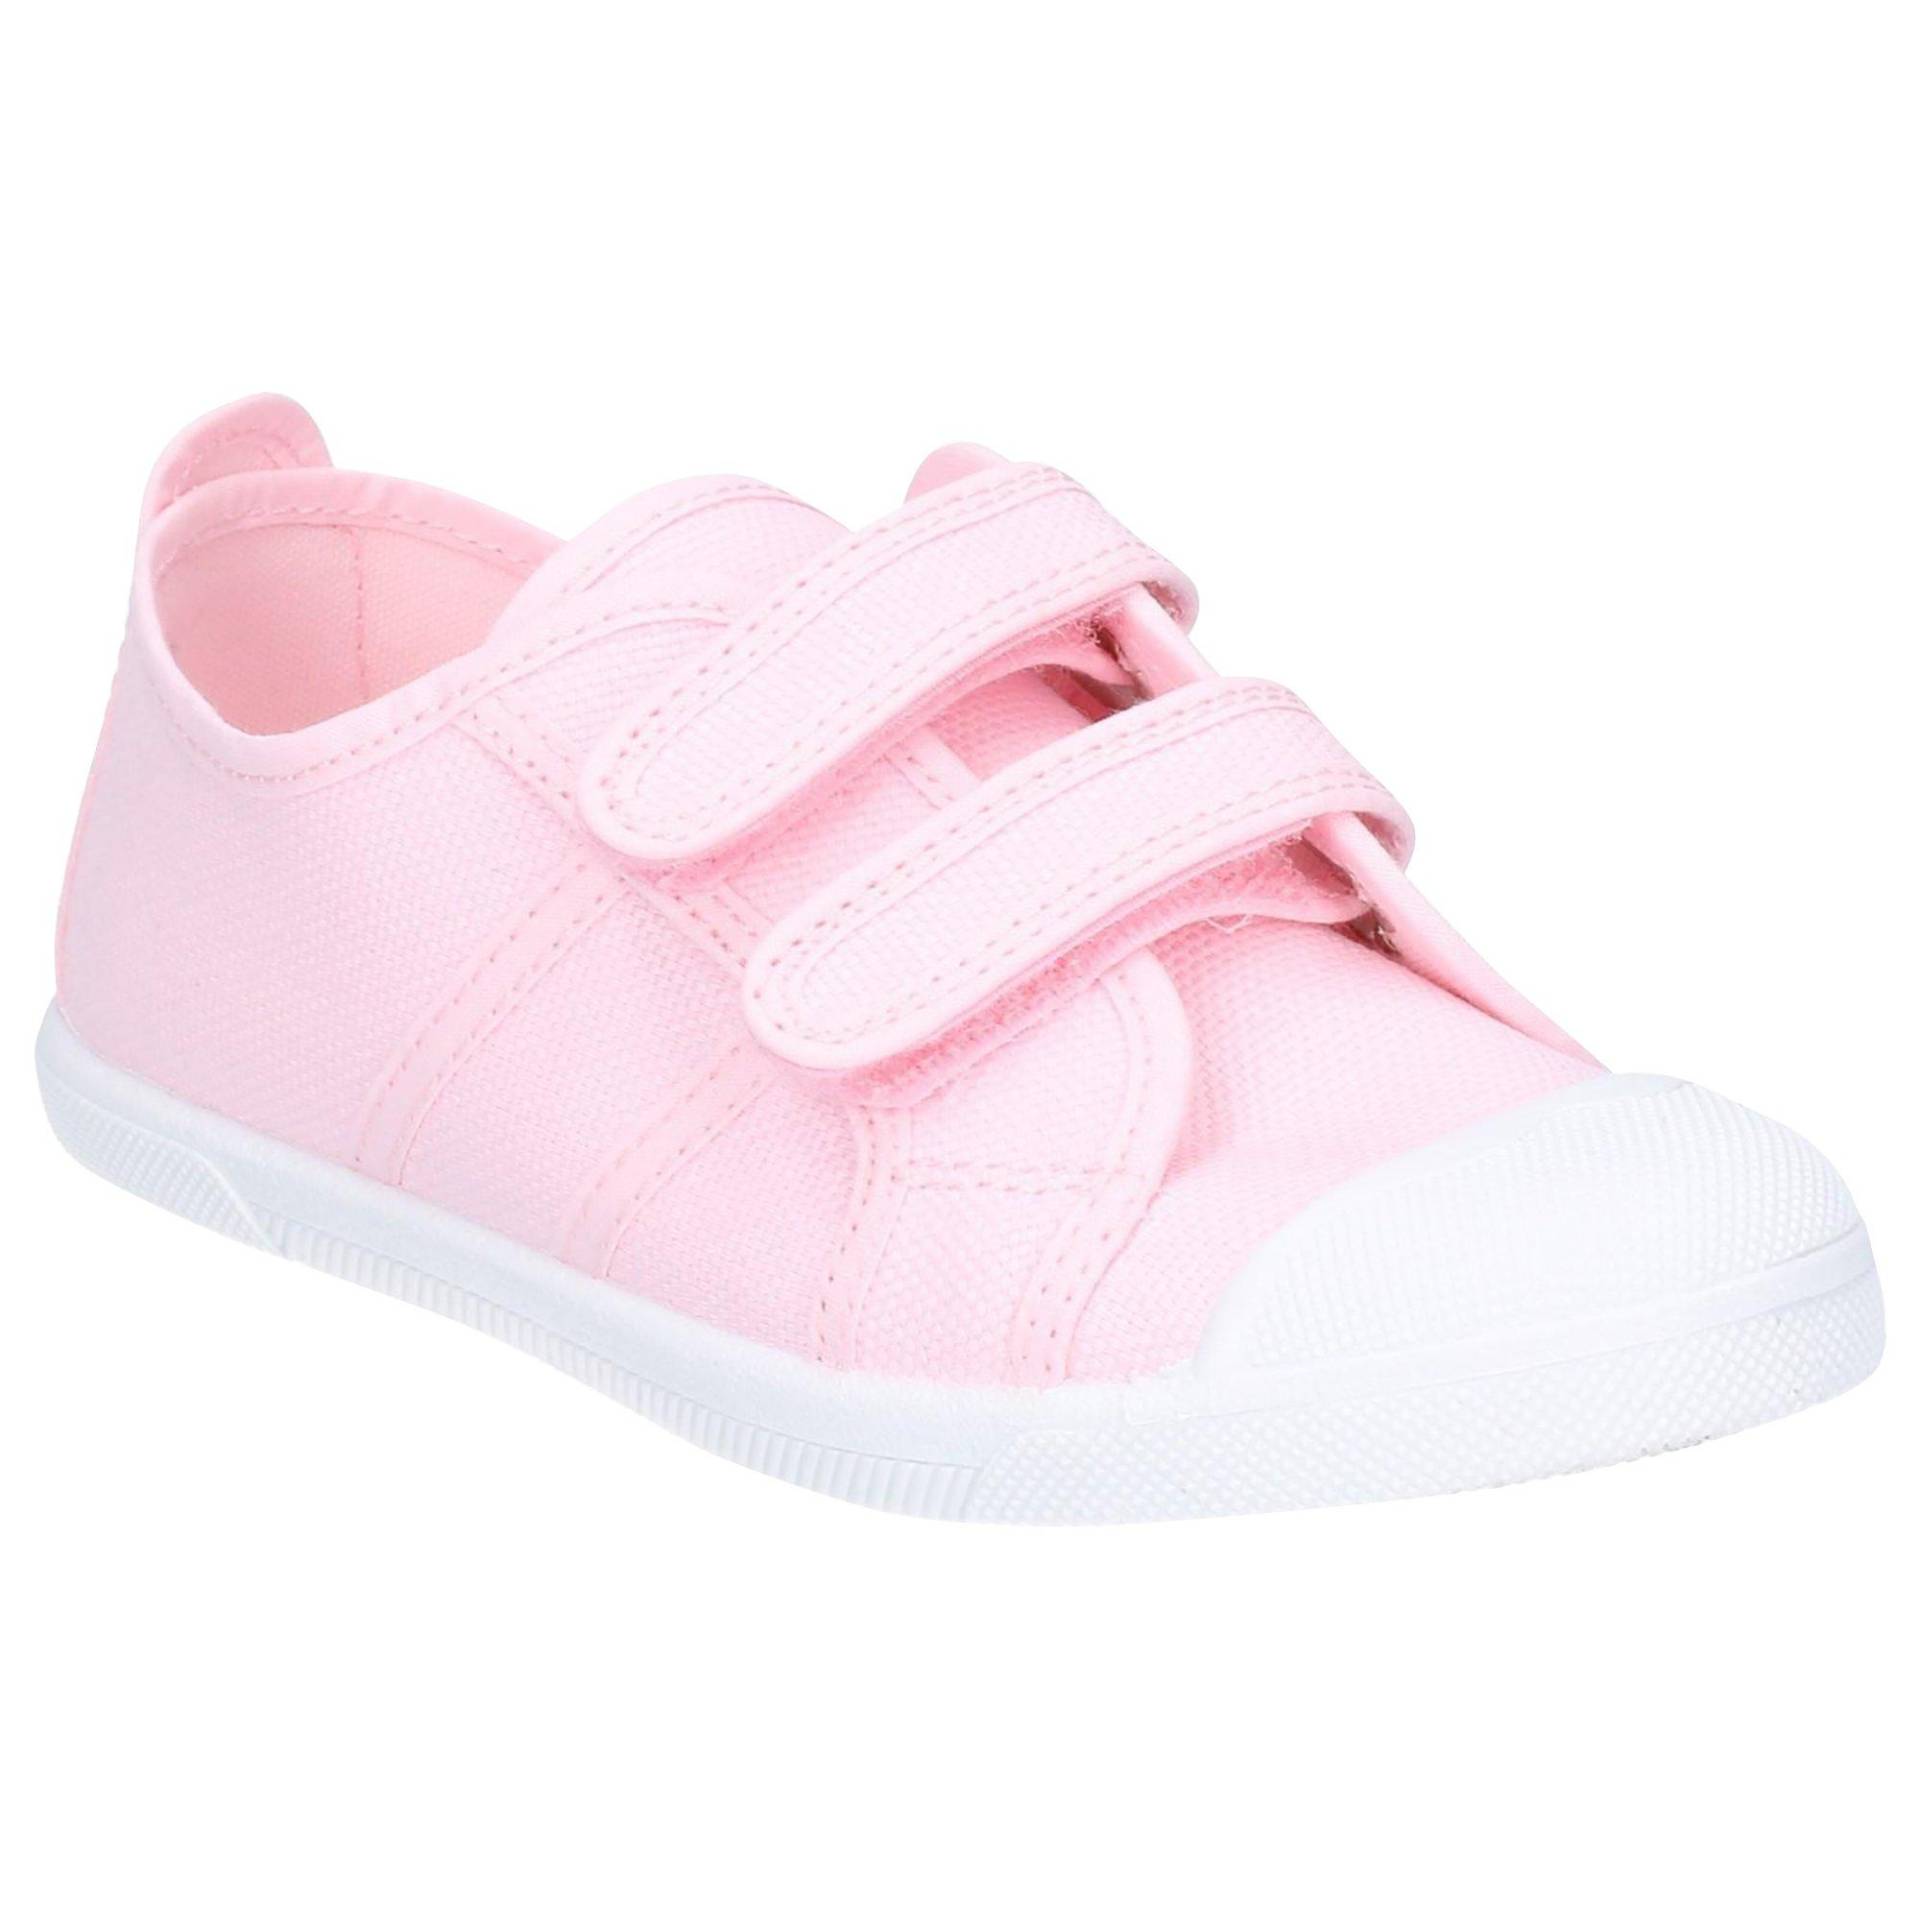 Schuhe Sasha Unisex Pink 25 von Flossy